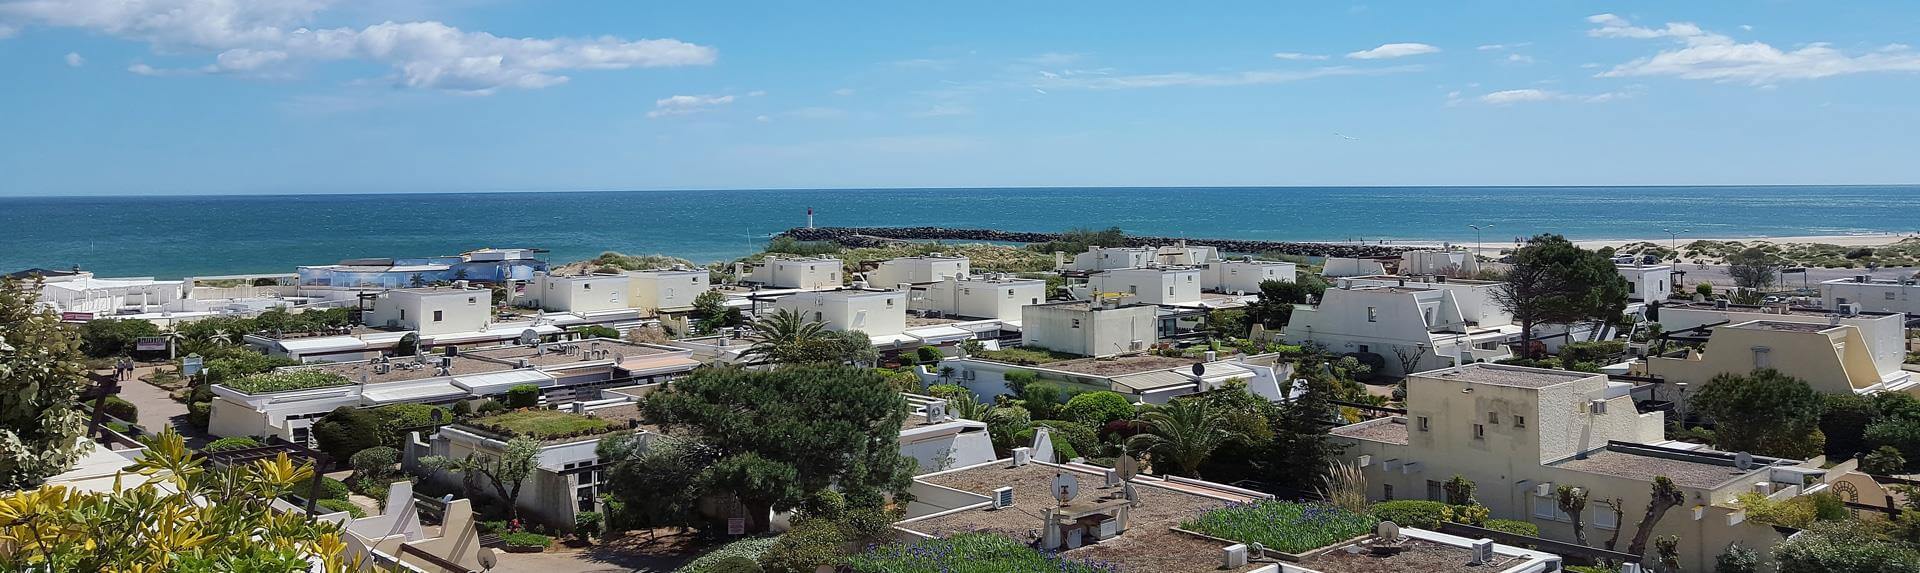 Студии и квартиры с видом на море – резиденция Port Nature : аренда в посёлке нудистов в Кап д'Агд